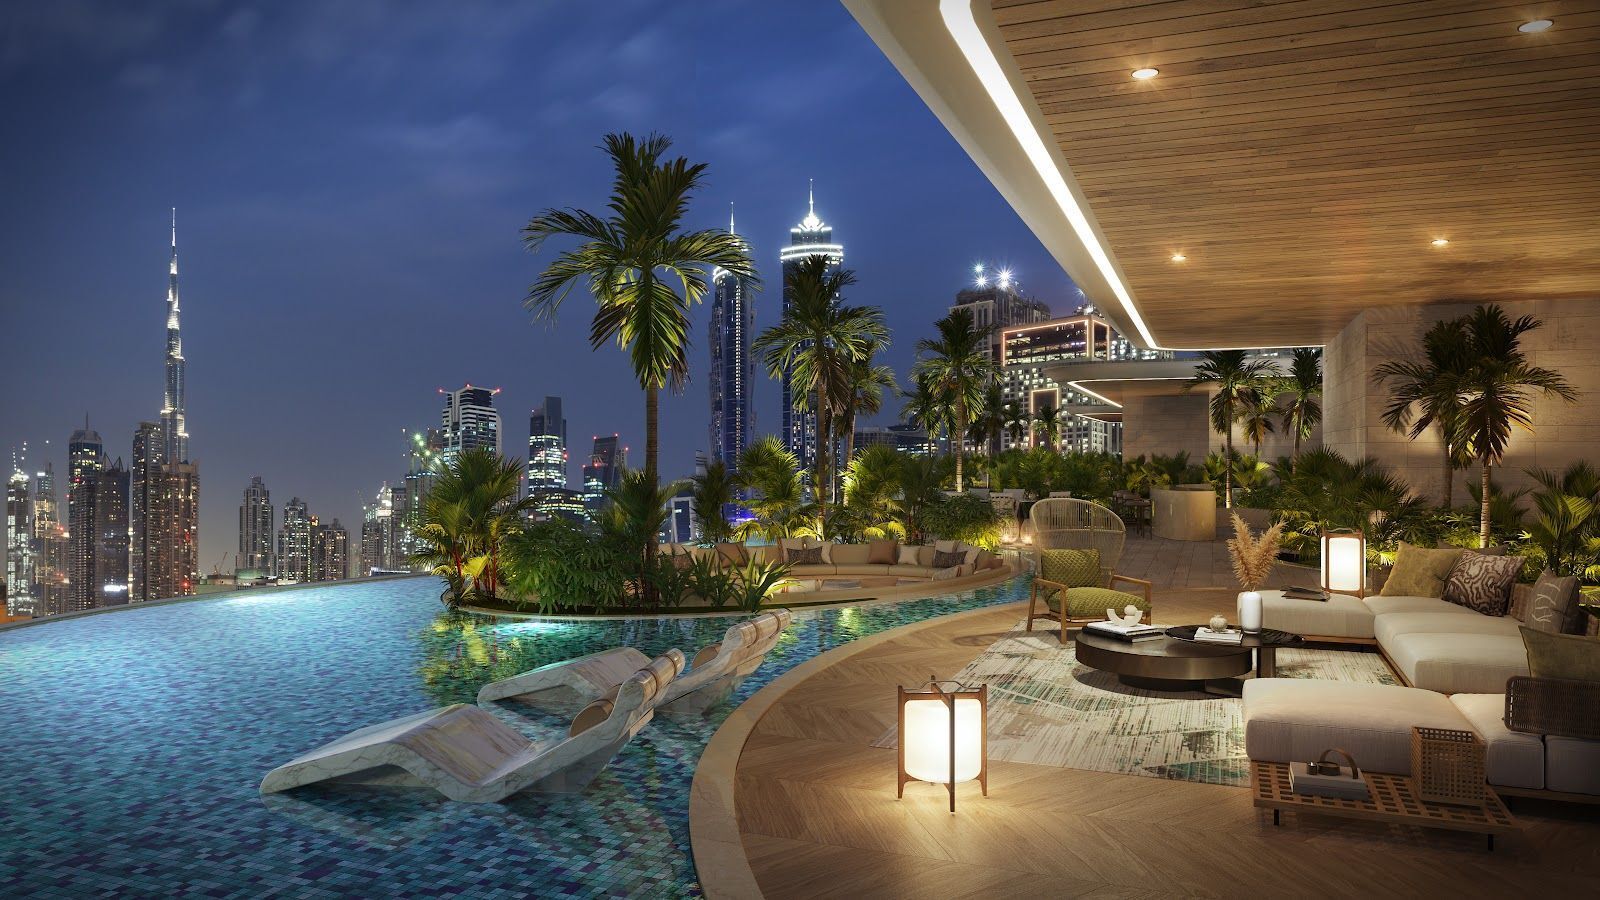 Vendita Attico Dubai | Fendi Canal View | 0% Fee | luxforsale.it